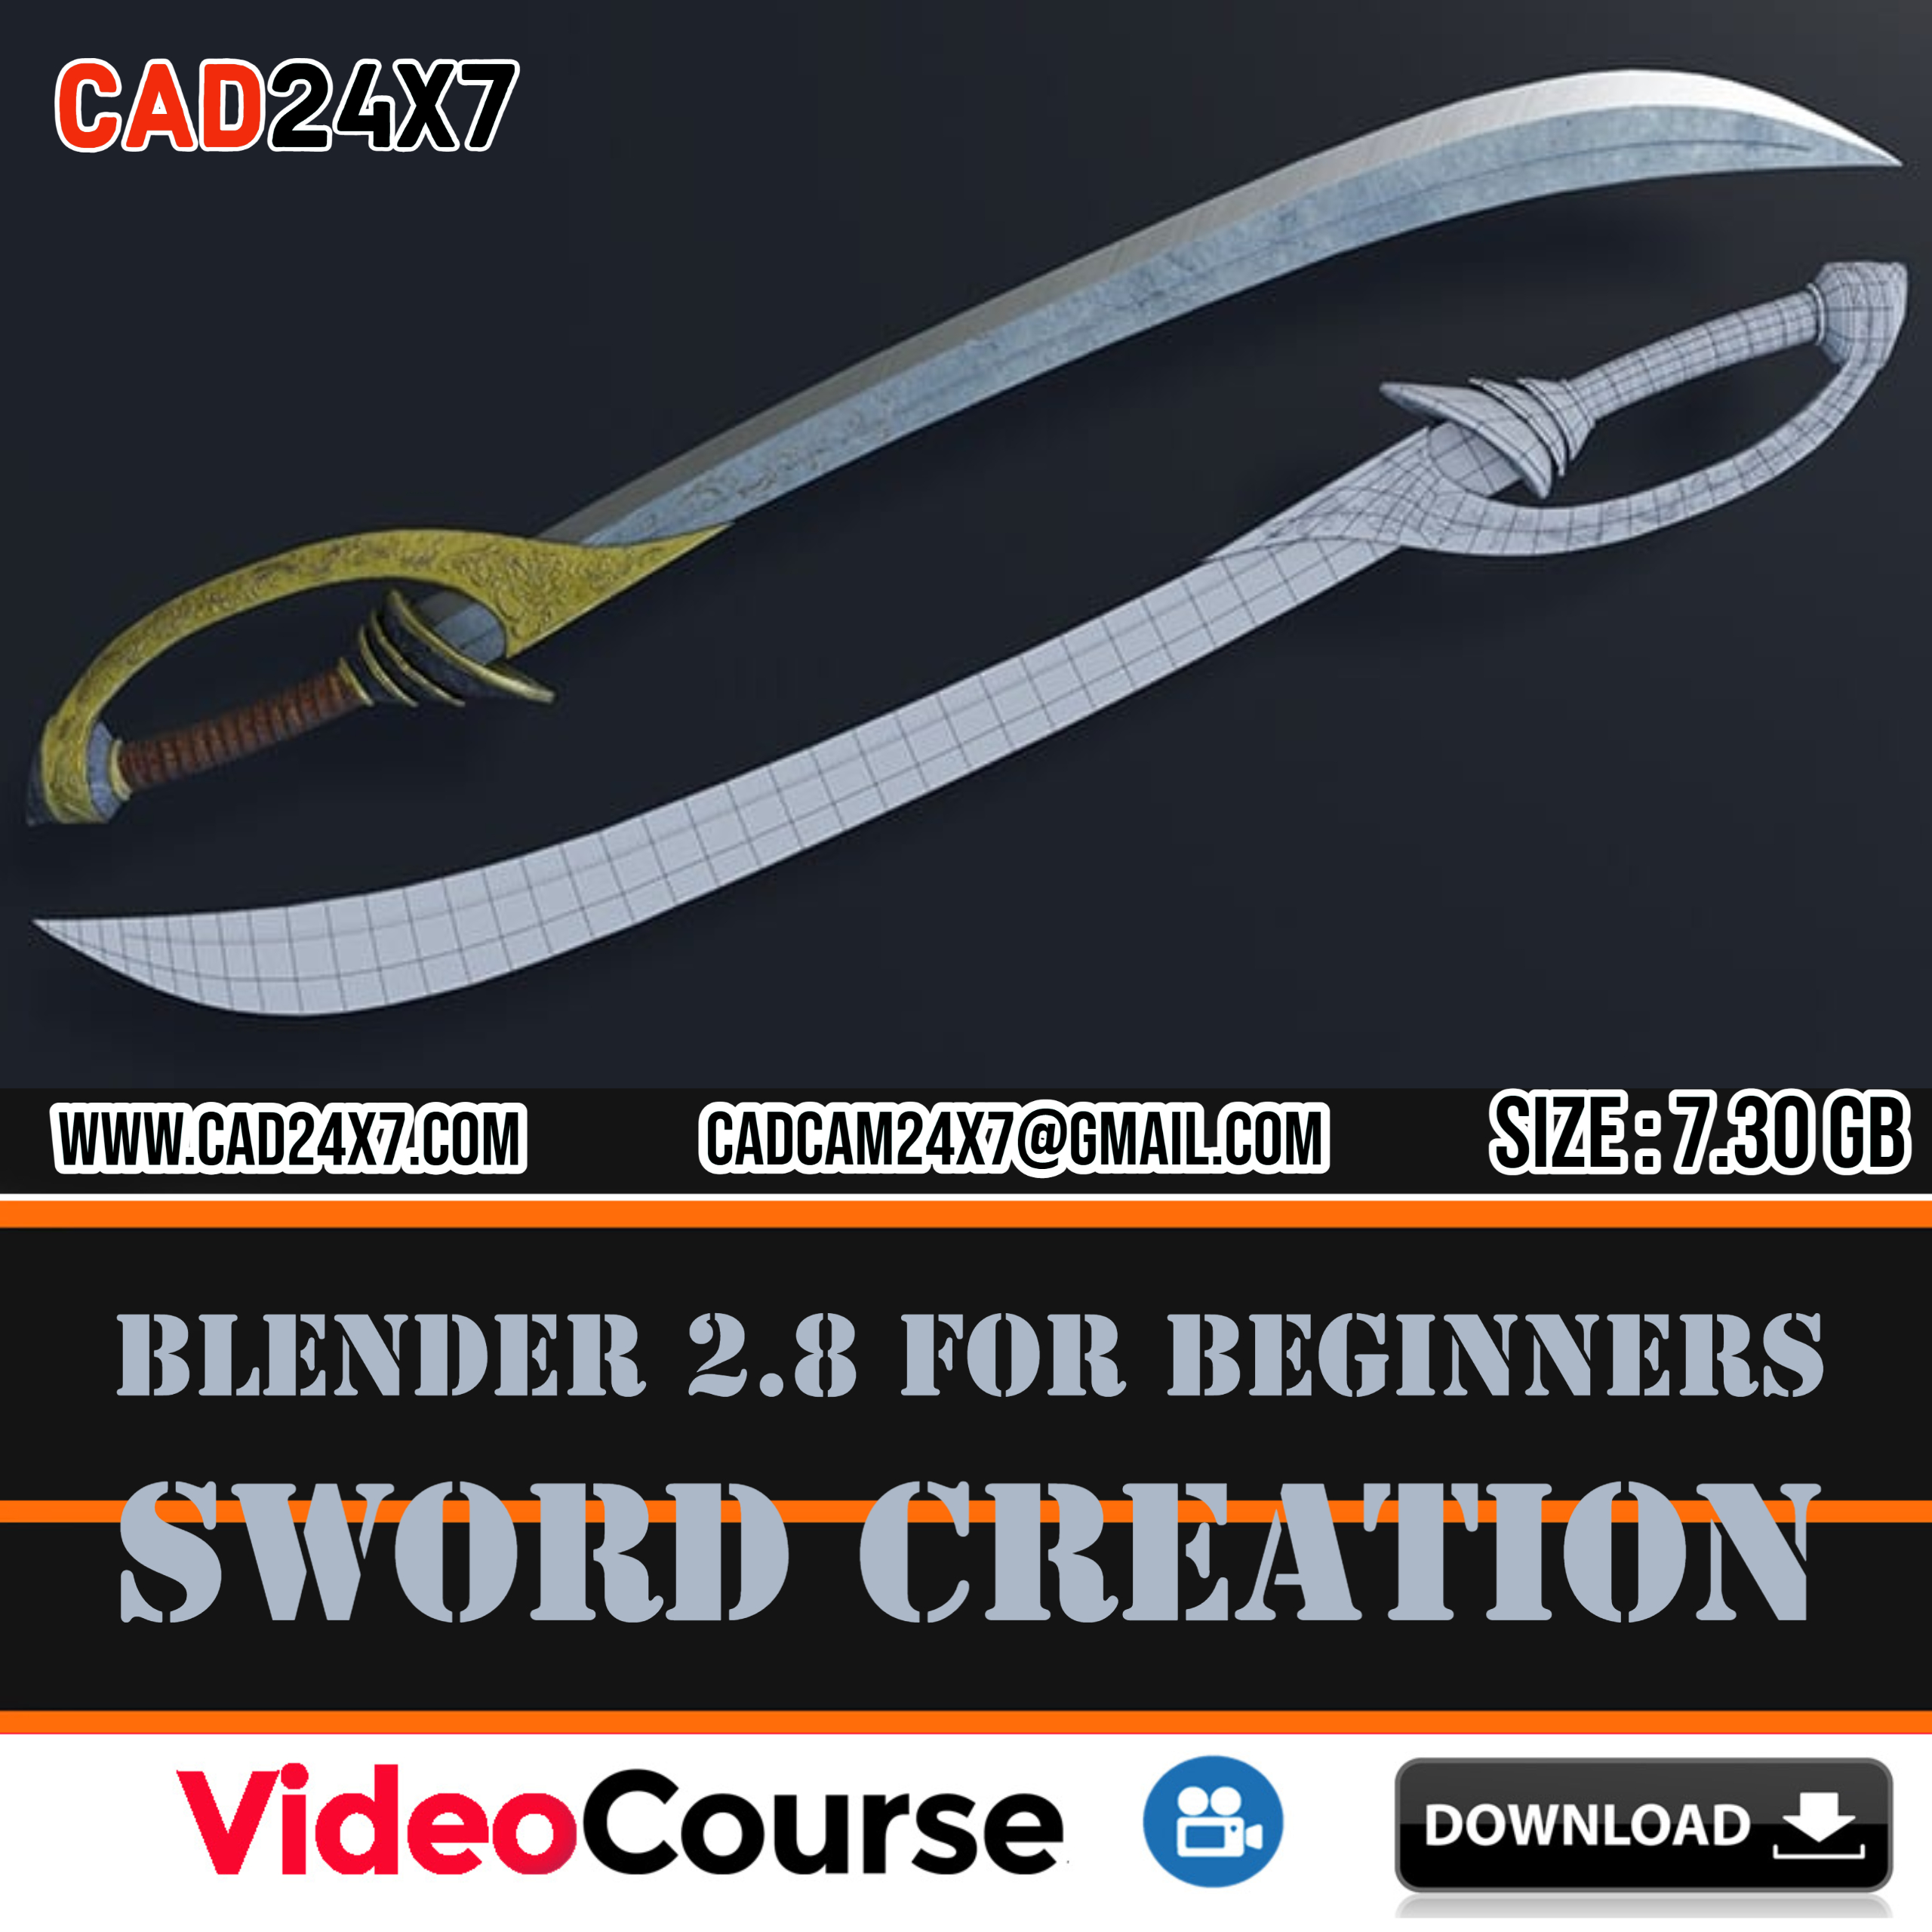 Blender-2.8-for-beginners-Sword-creation